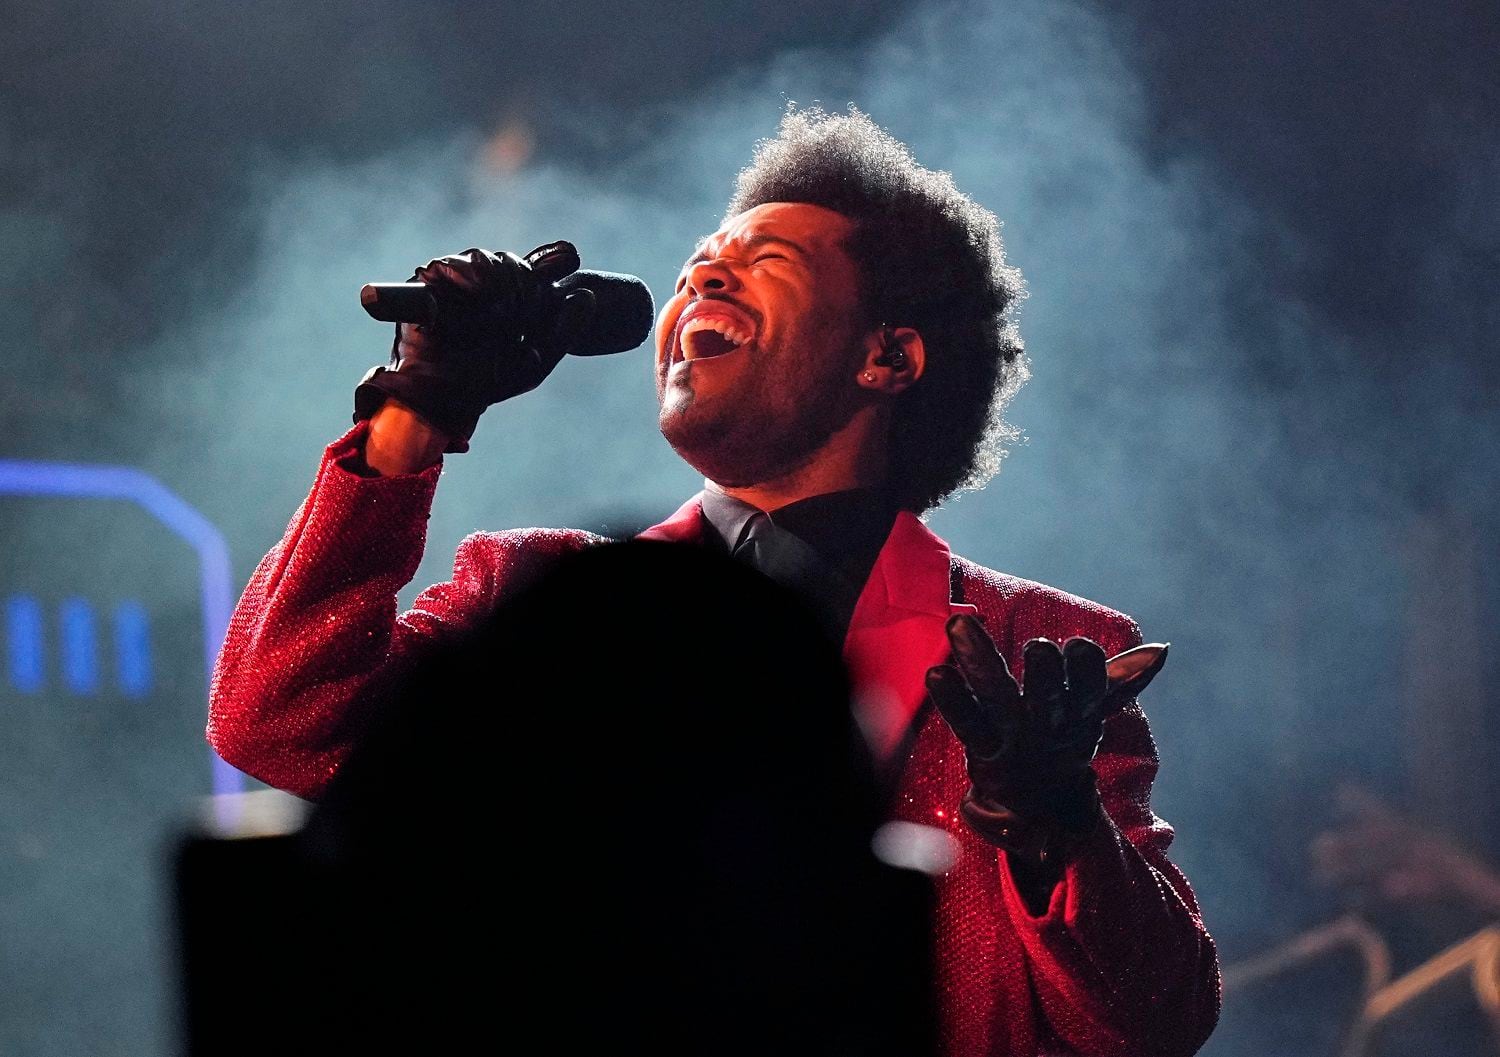 ARCHIVO - The Weeknd canta durante su espectáculo del medio tiempo del Super Bowl el 7 de febrero de 2021 en Tampa, Florida. The Weeknd fue desairado por los Grammy, pero recibió 16 nominaciones a los Premios Billboard de la Música el jueves 29 de abril de 2021. (AP Foto/David J. Phillip, Archivo)